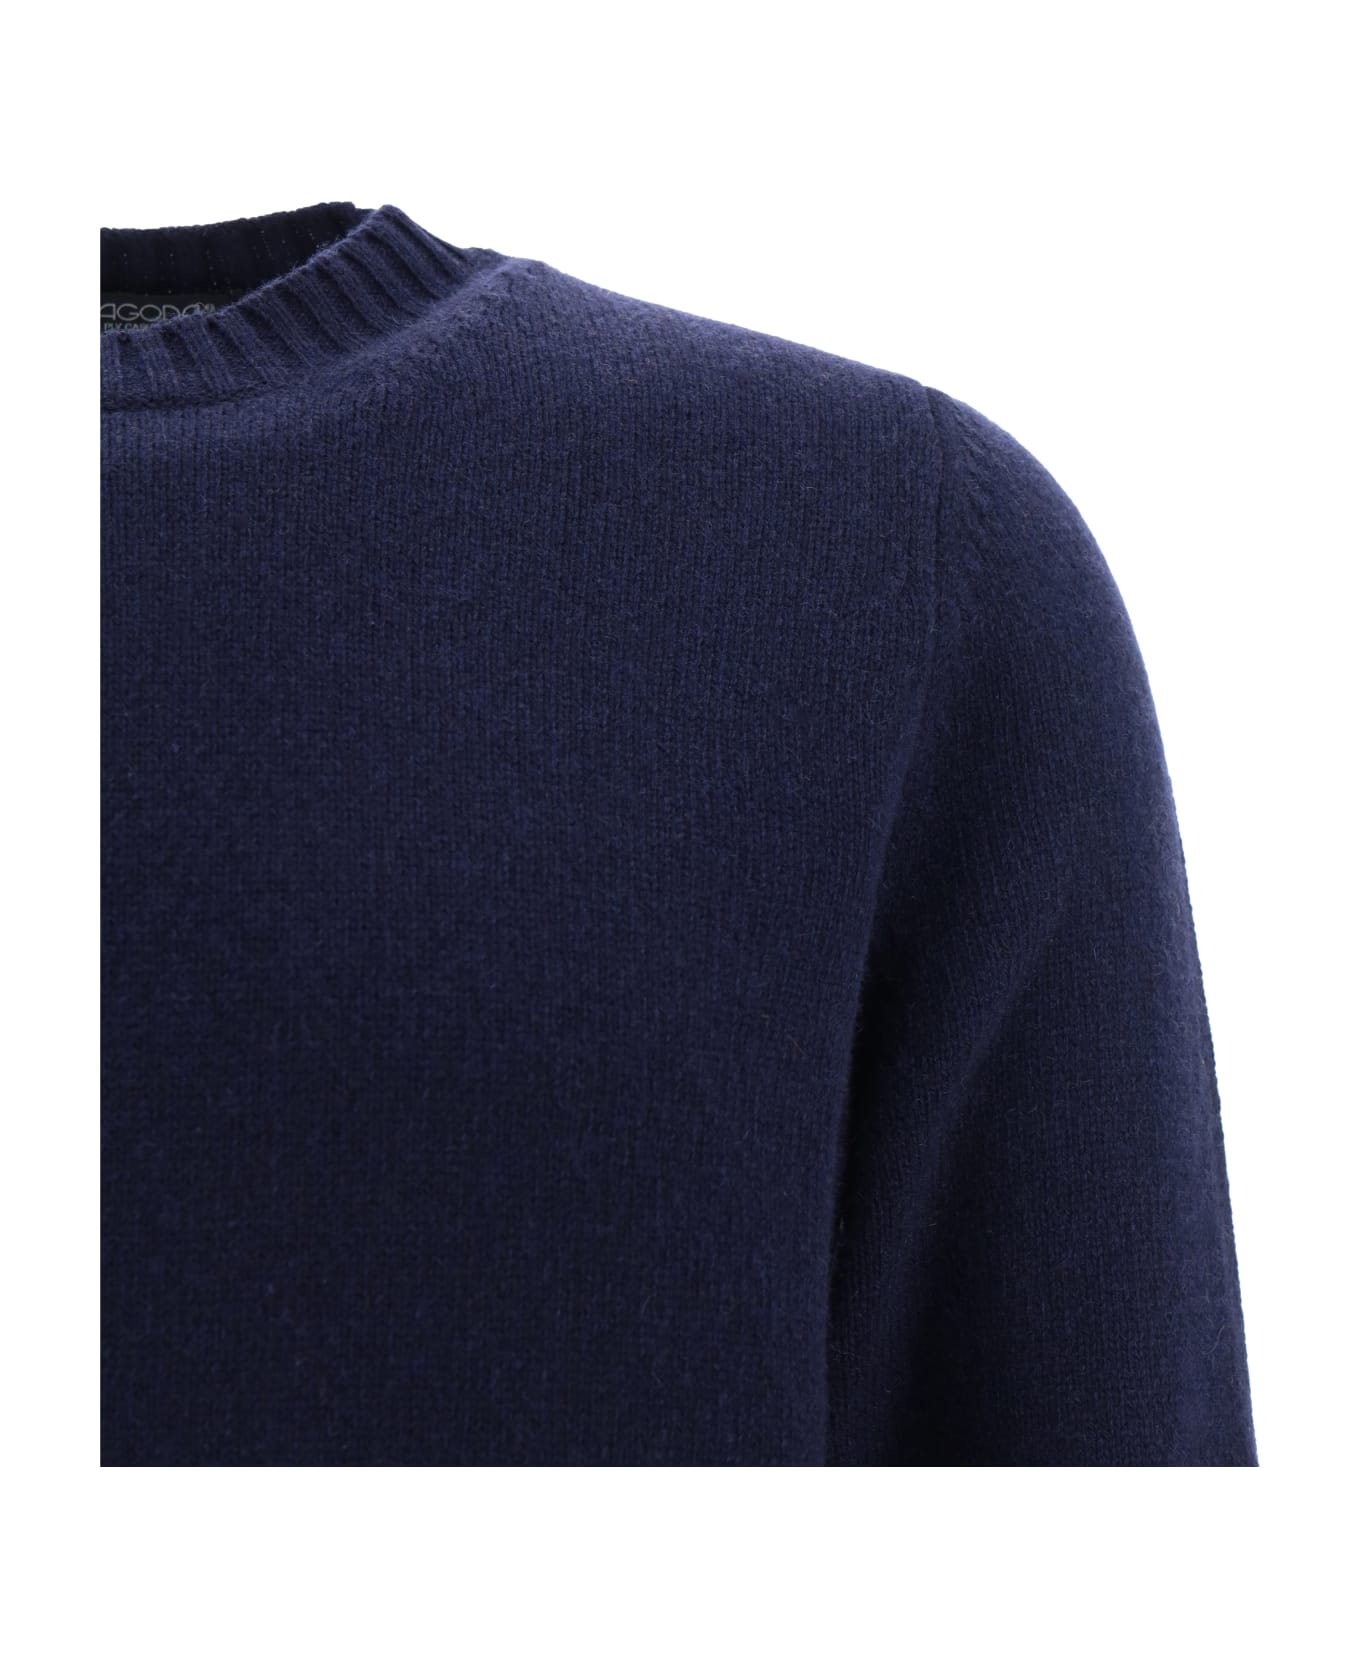 Aragona Sweater - Blu Notte ニットウェア